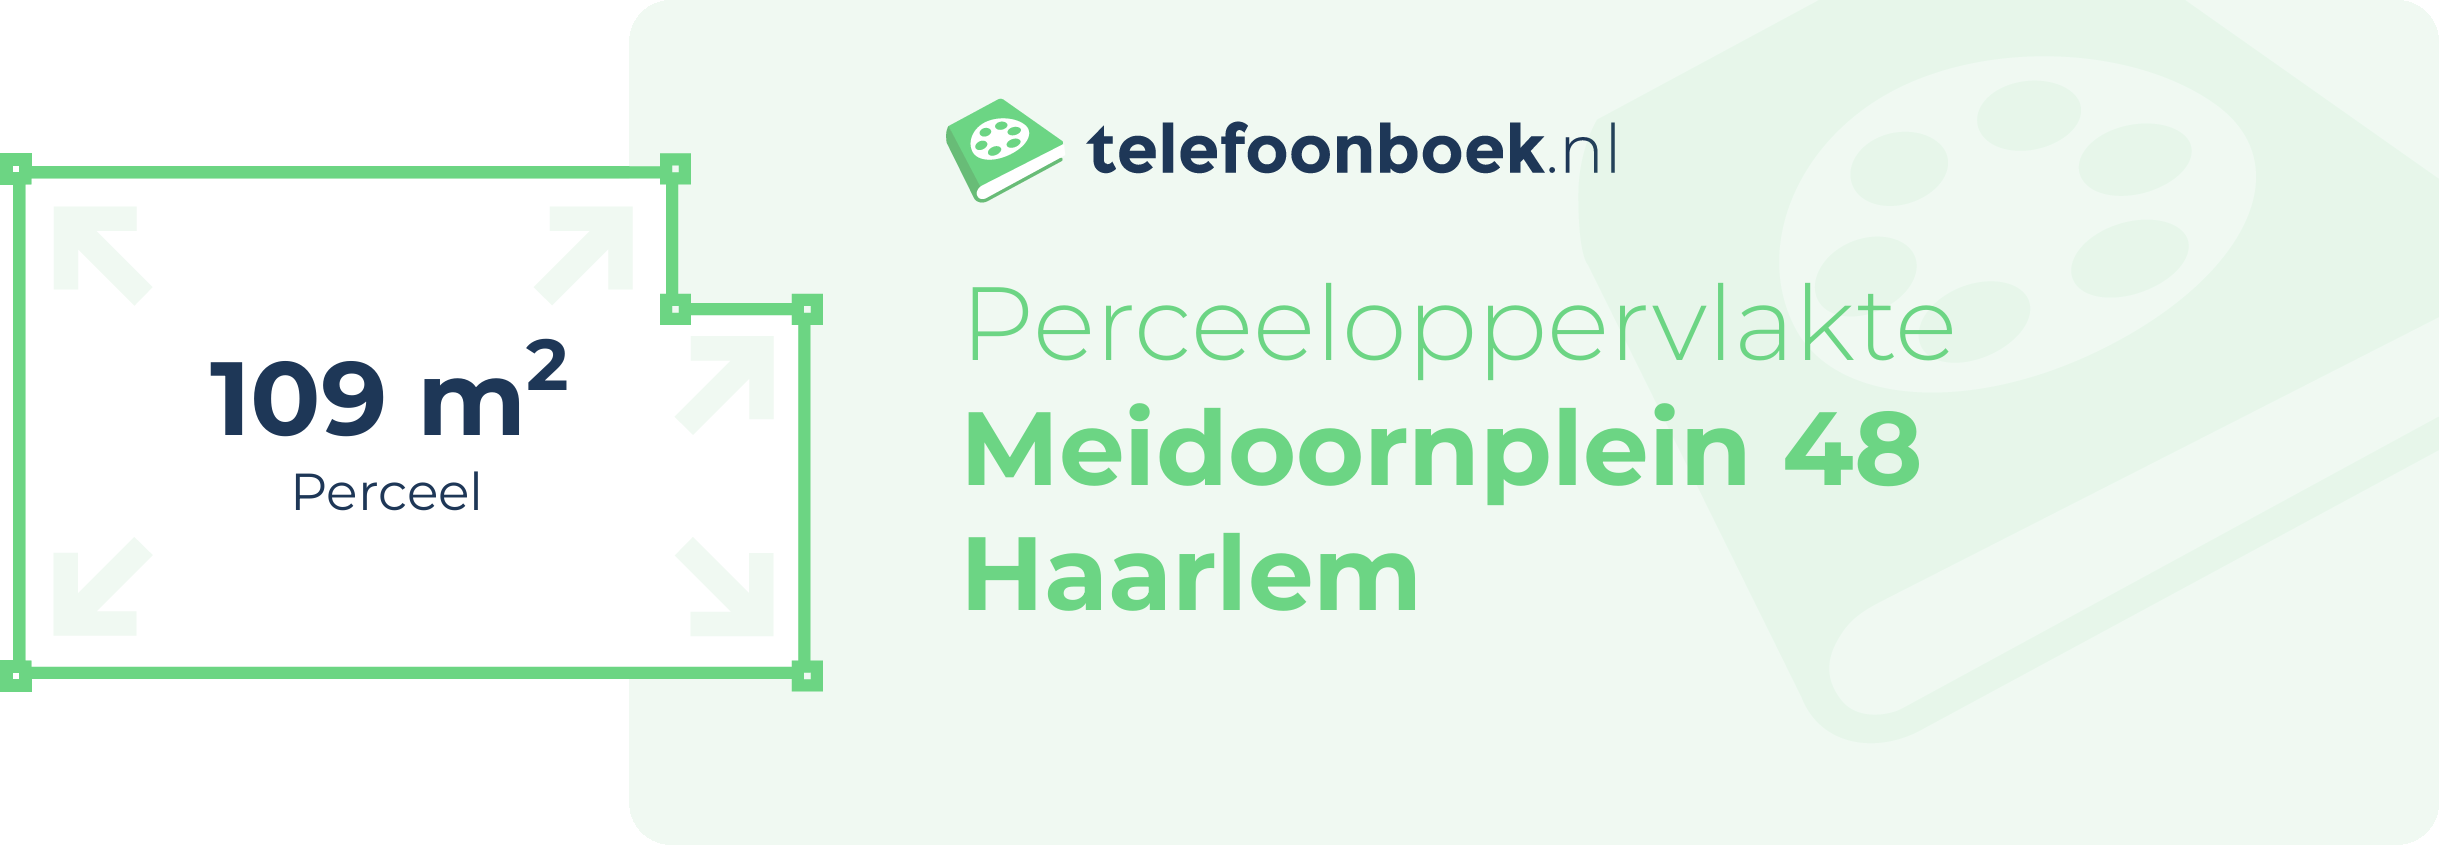 Perceeloppervlakte Meidoornplein 48 Haarlem